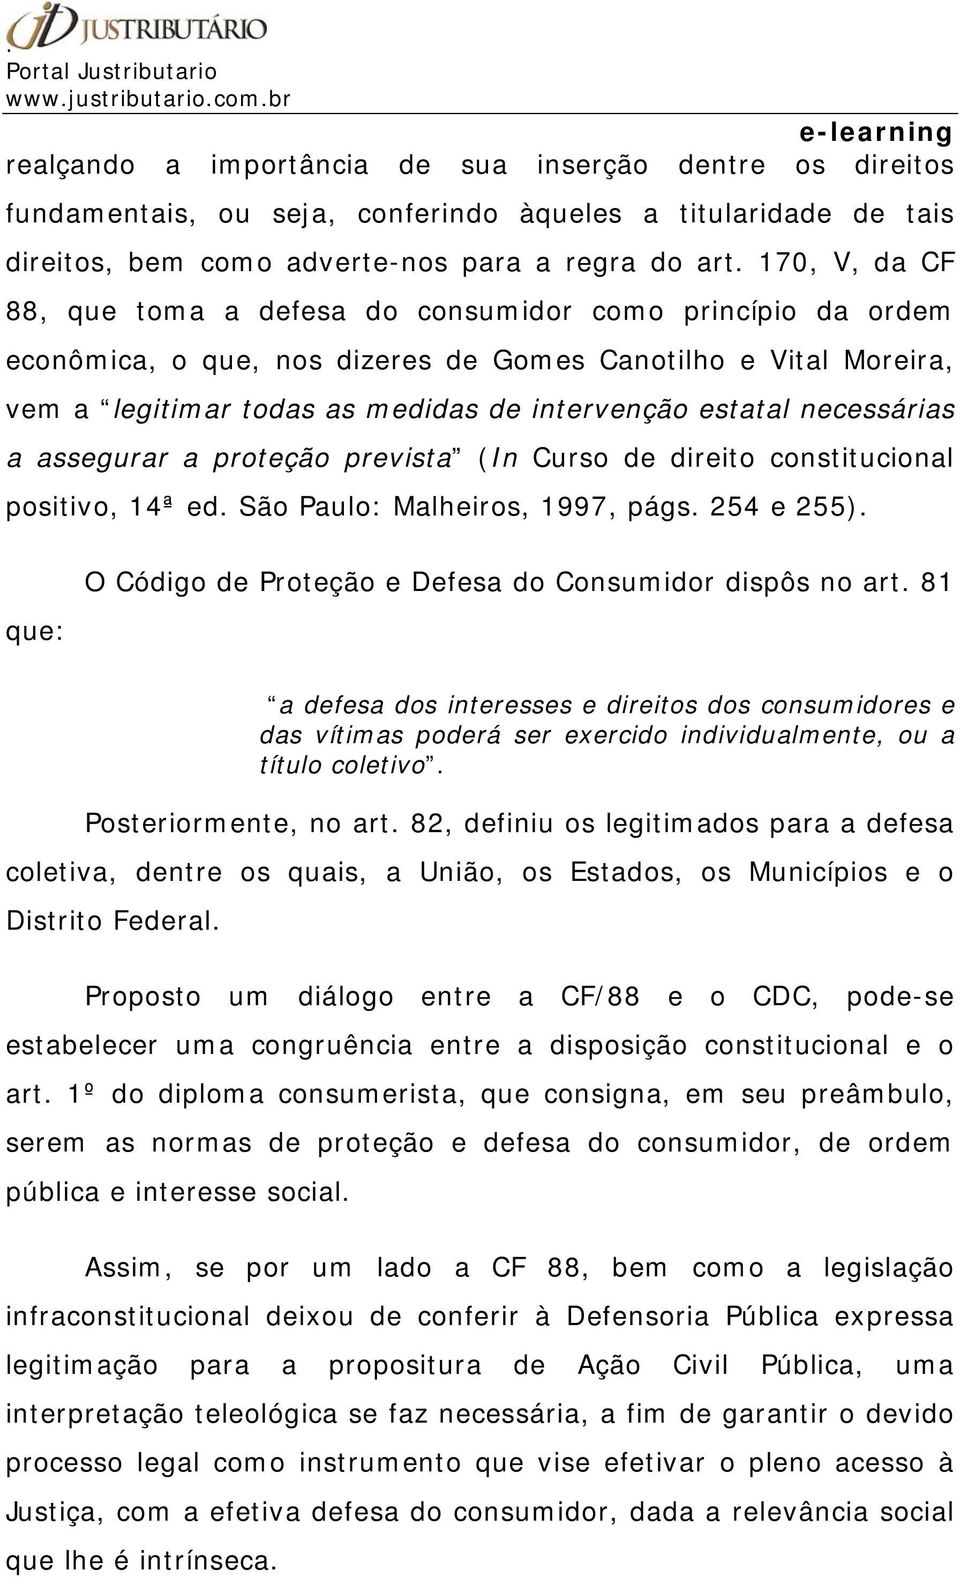 necessárias a assegurar a proteção prevista (In Curso de direito constitucional positivo, 14ª ed. São Paulo: Malheiros, 1997, págs. 254 e 255).